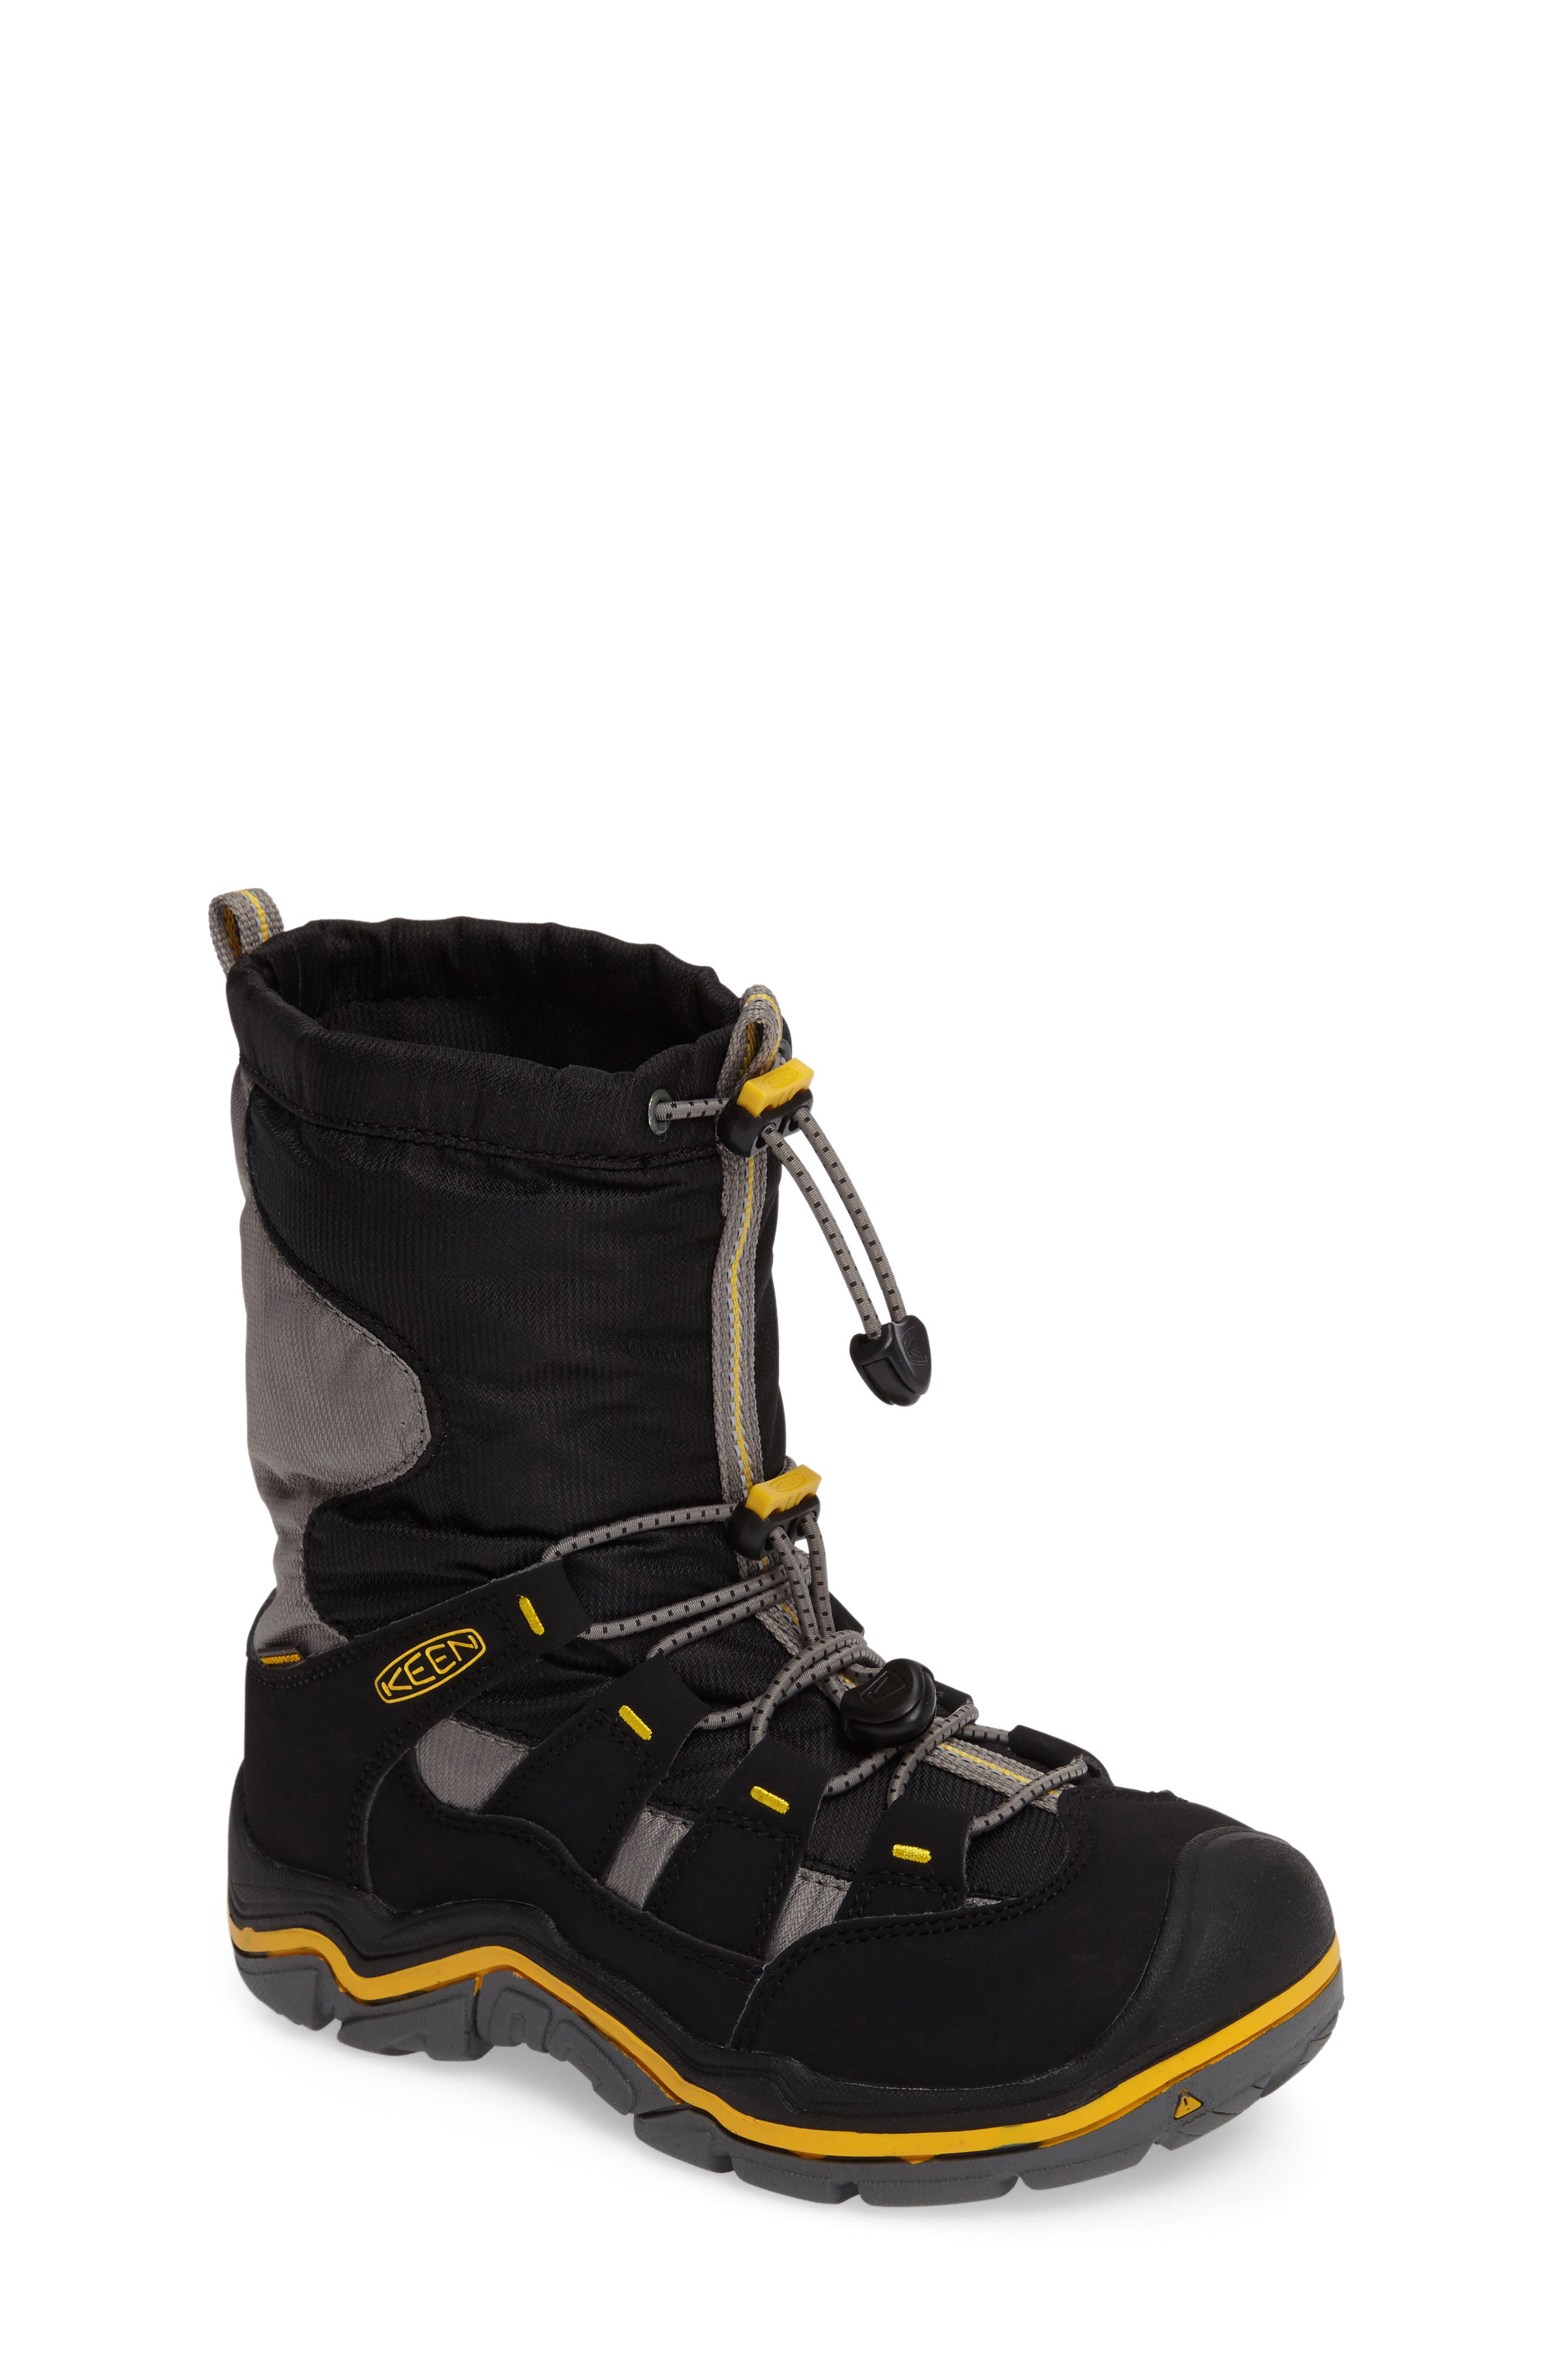 keen winterport boots